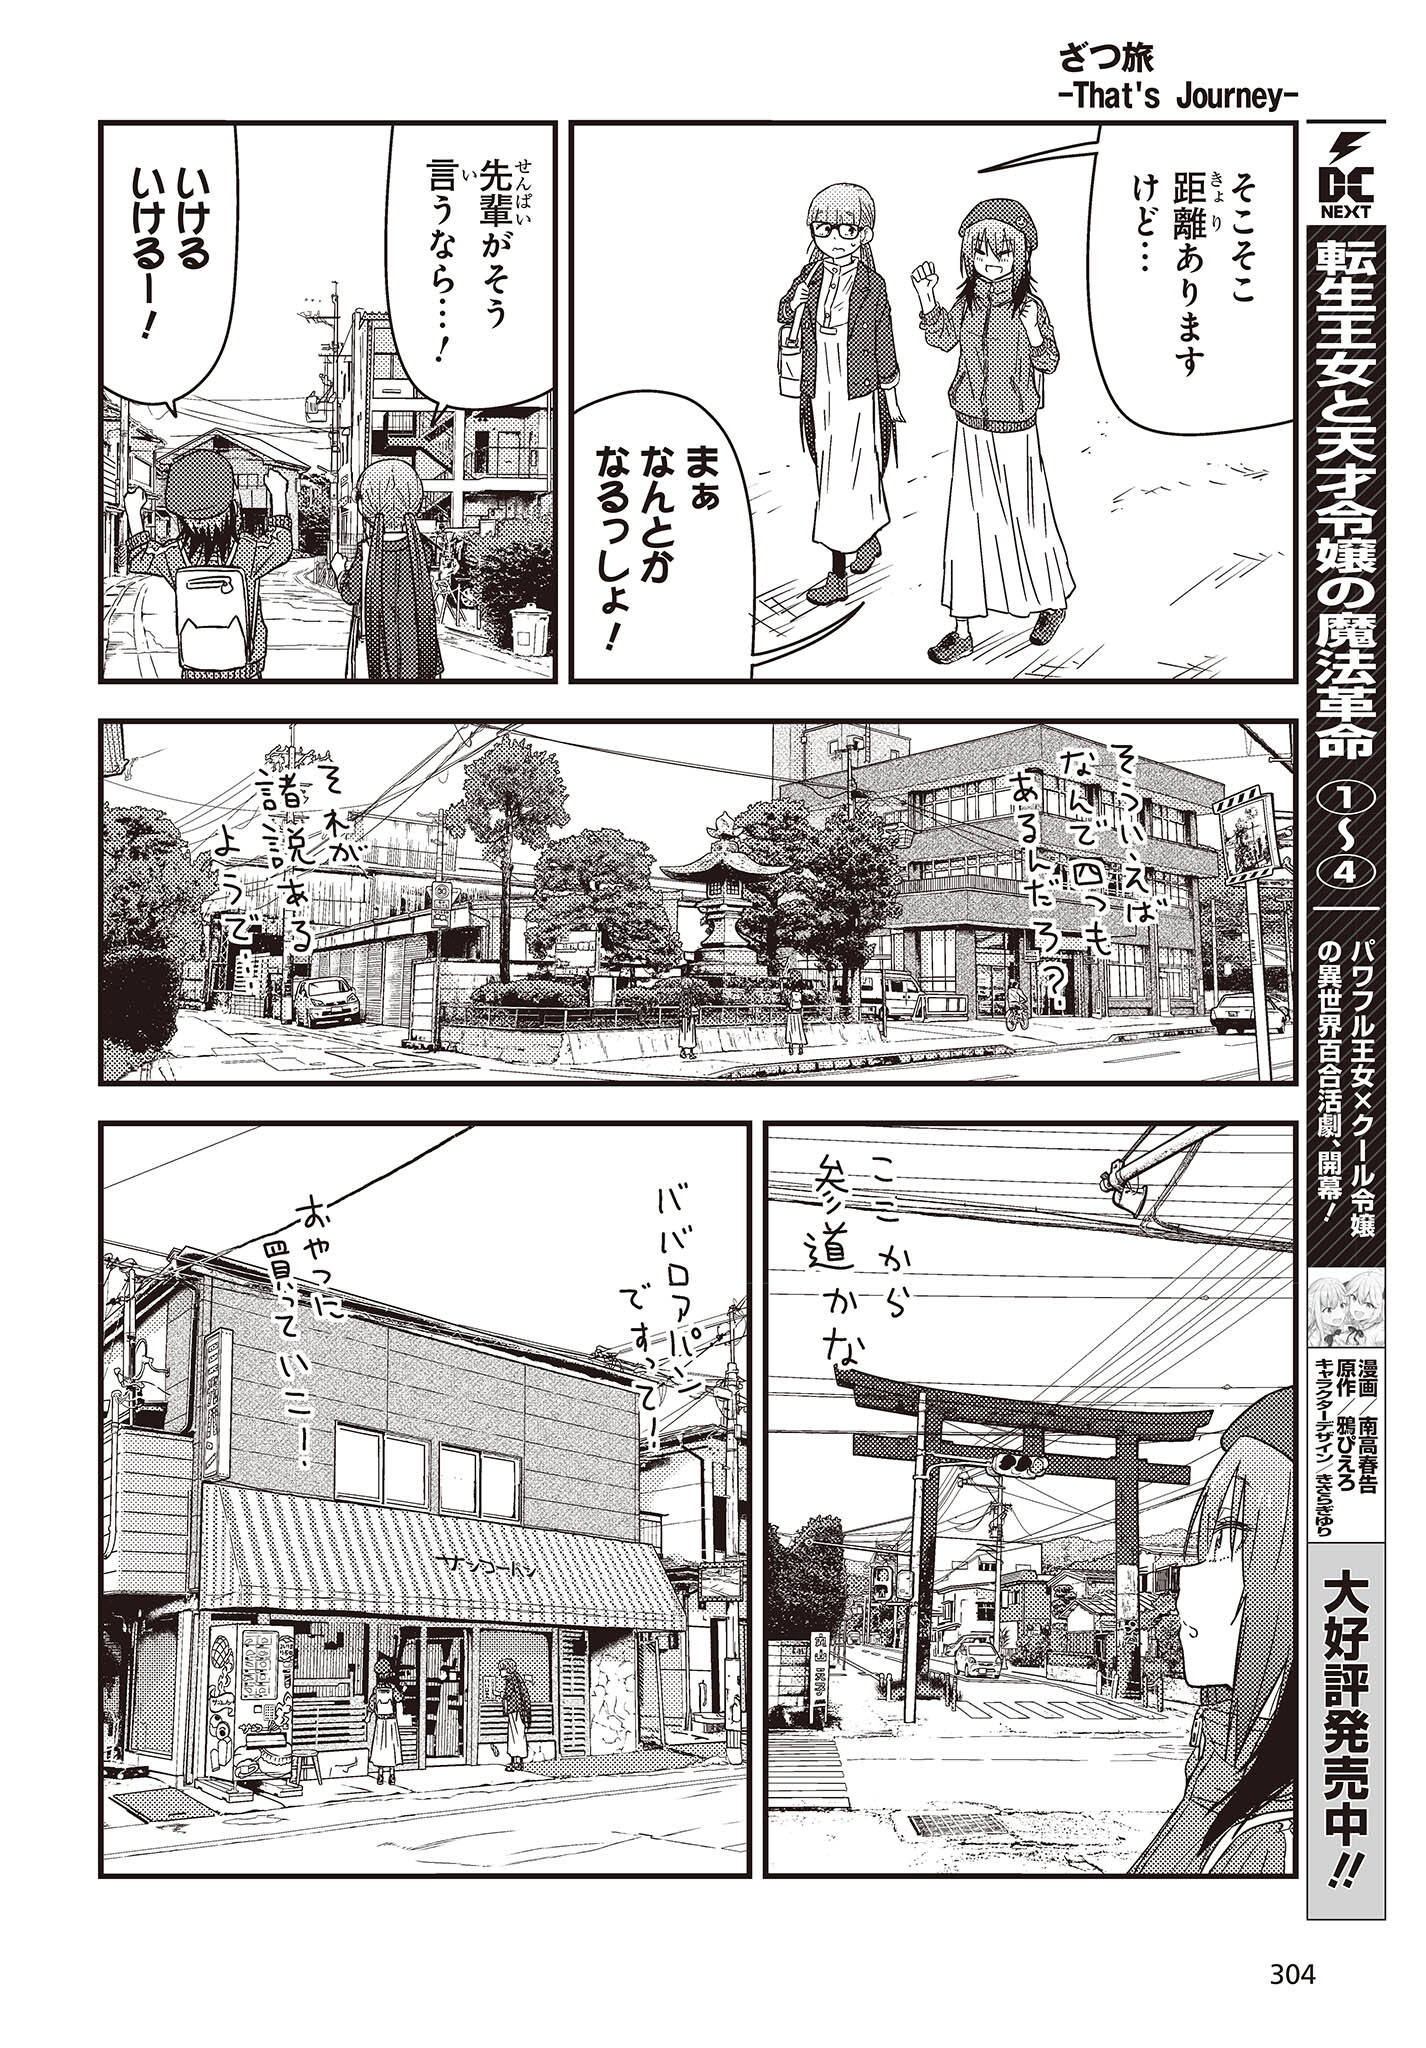 ざつ旅-That's Journey- 第28話 - Page 8